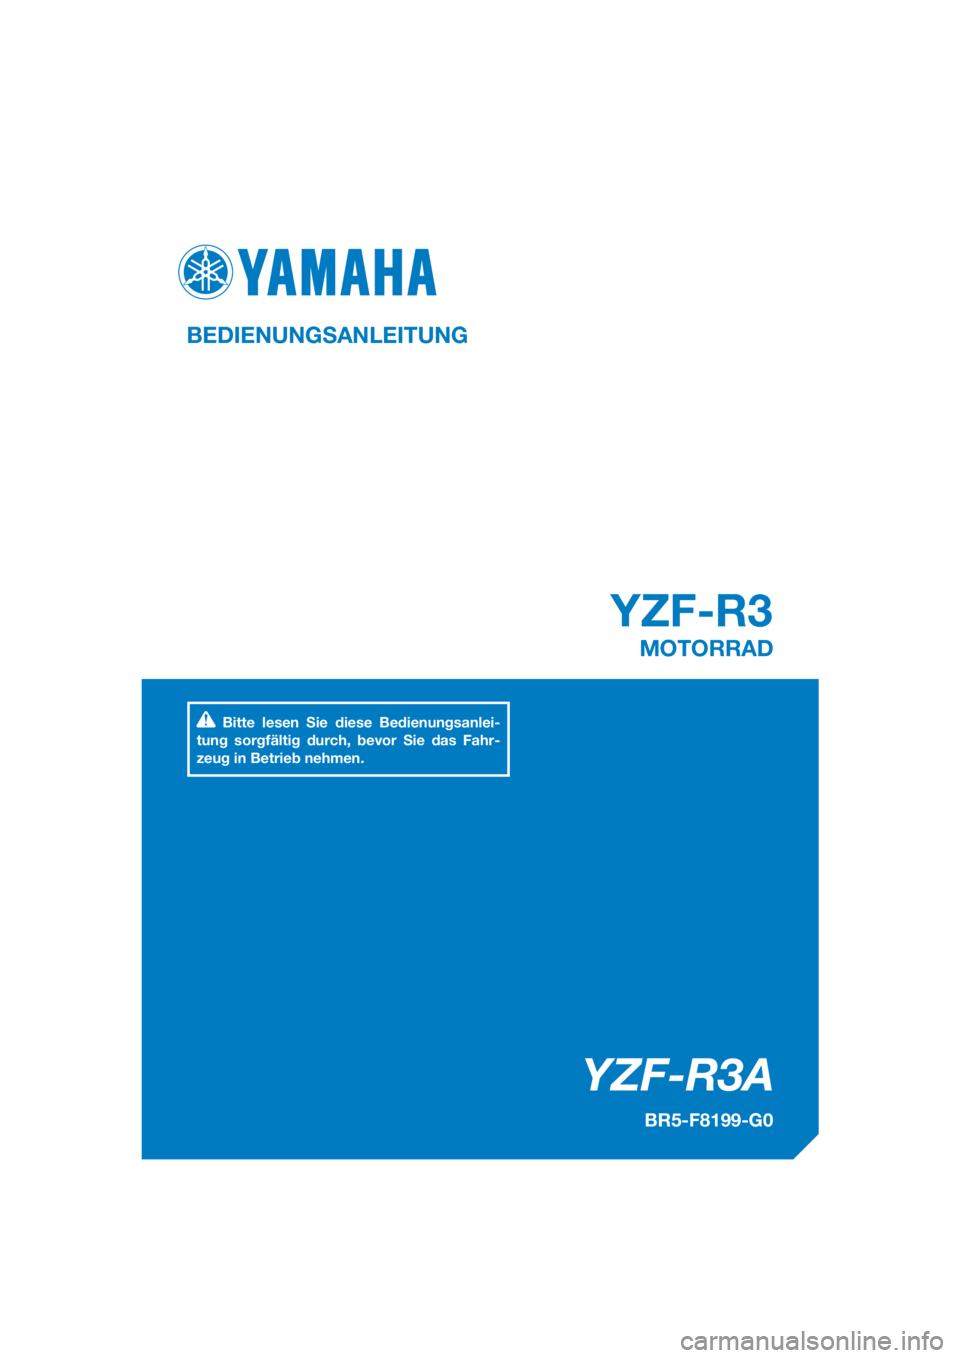 YAMAHA YZF-R3 2018  Betriebsanleitungen (in German) DIC183
YZF-R3A
YZF-R3
BEDIENUNGSANLEITUNG
BR5-F8199-G0
MOTORRAD
Bitte lesen Sie diese Bedienungsanlei-
tung sorgfältig durch, bevor Sie das Fahr-
zeug in Betrieb nehmen.
[German  (G)] 